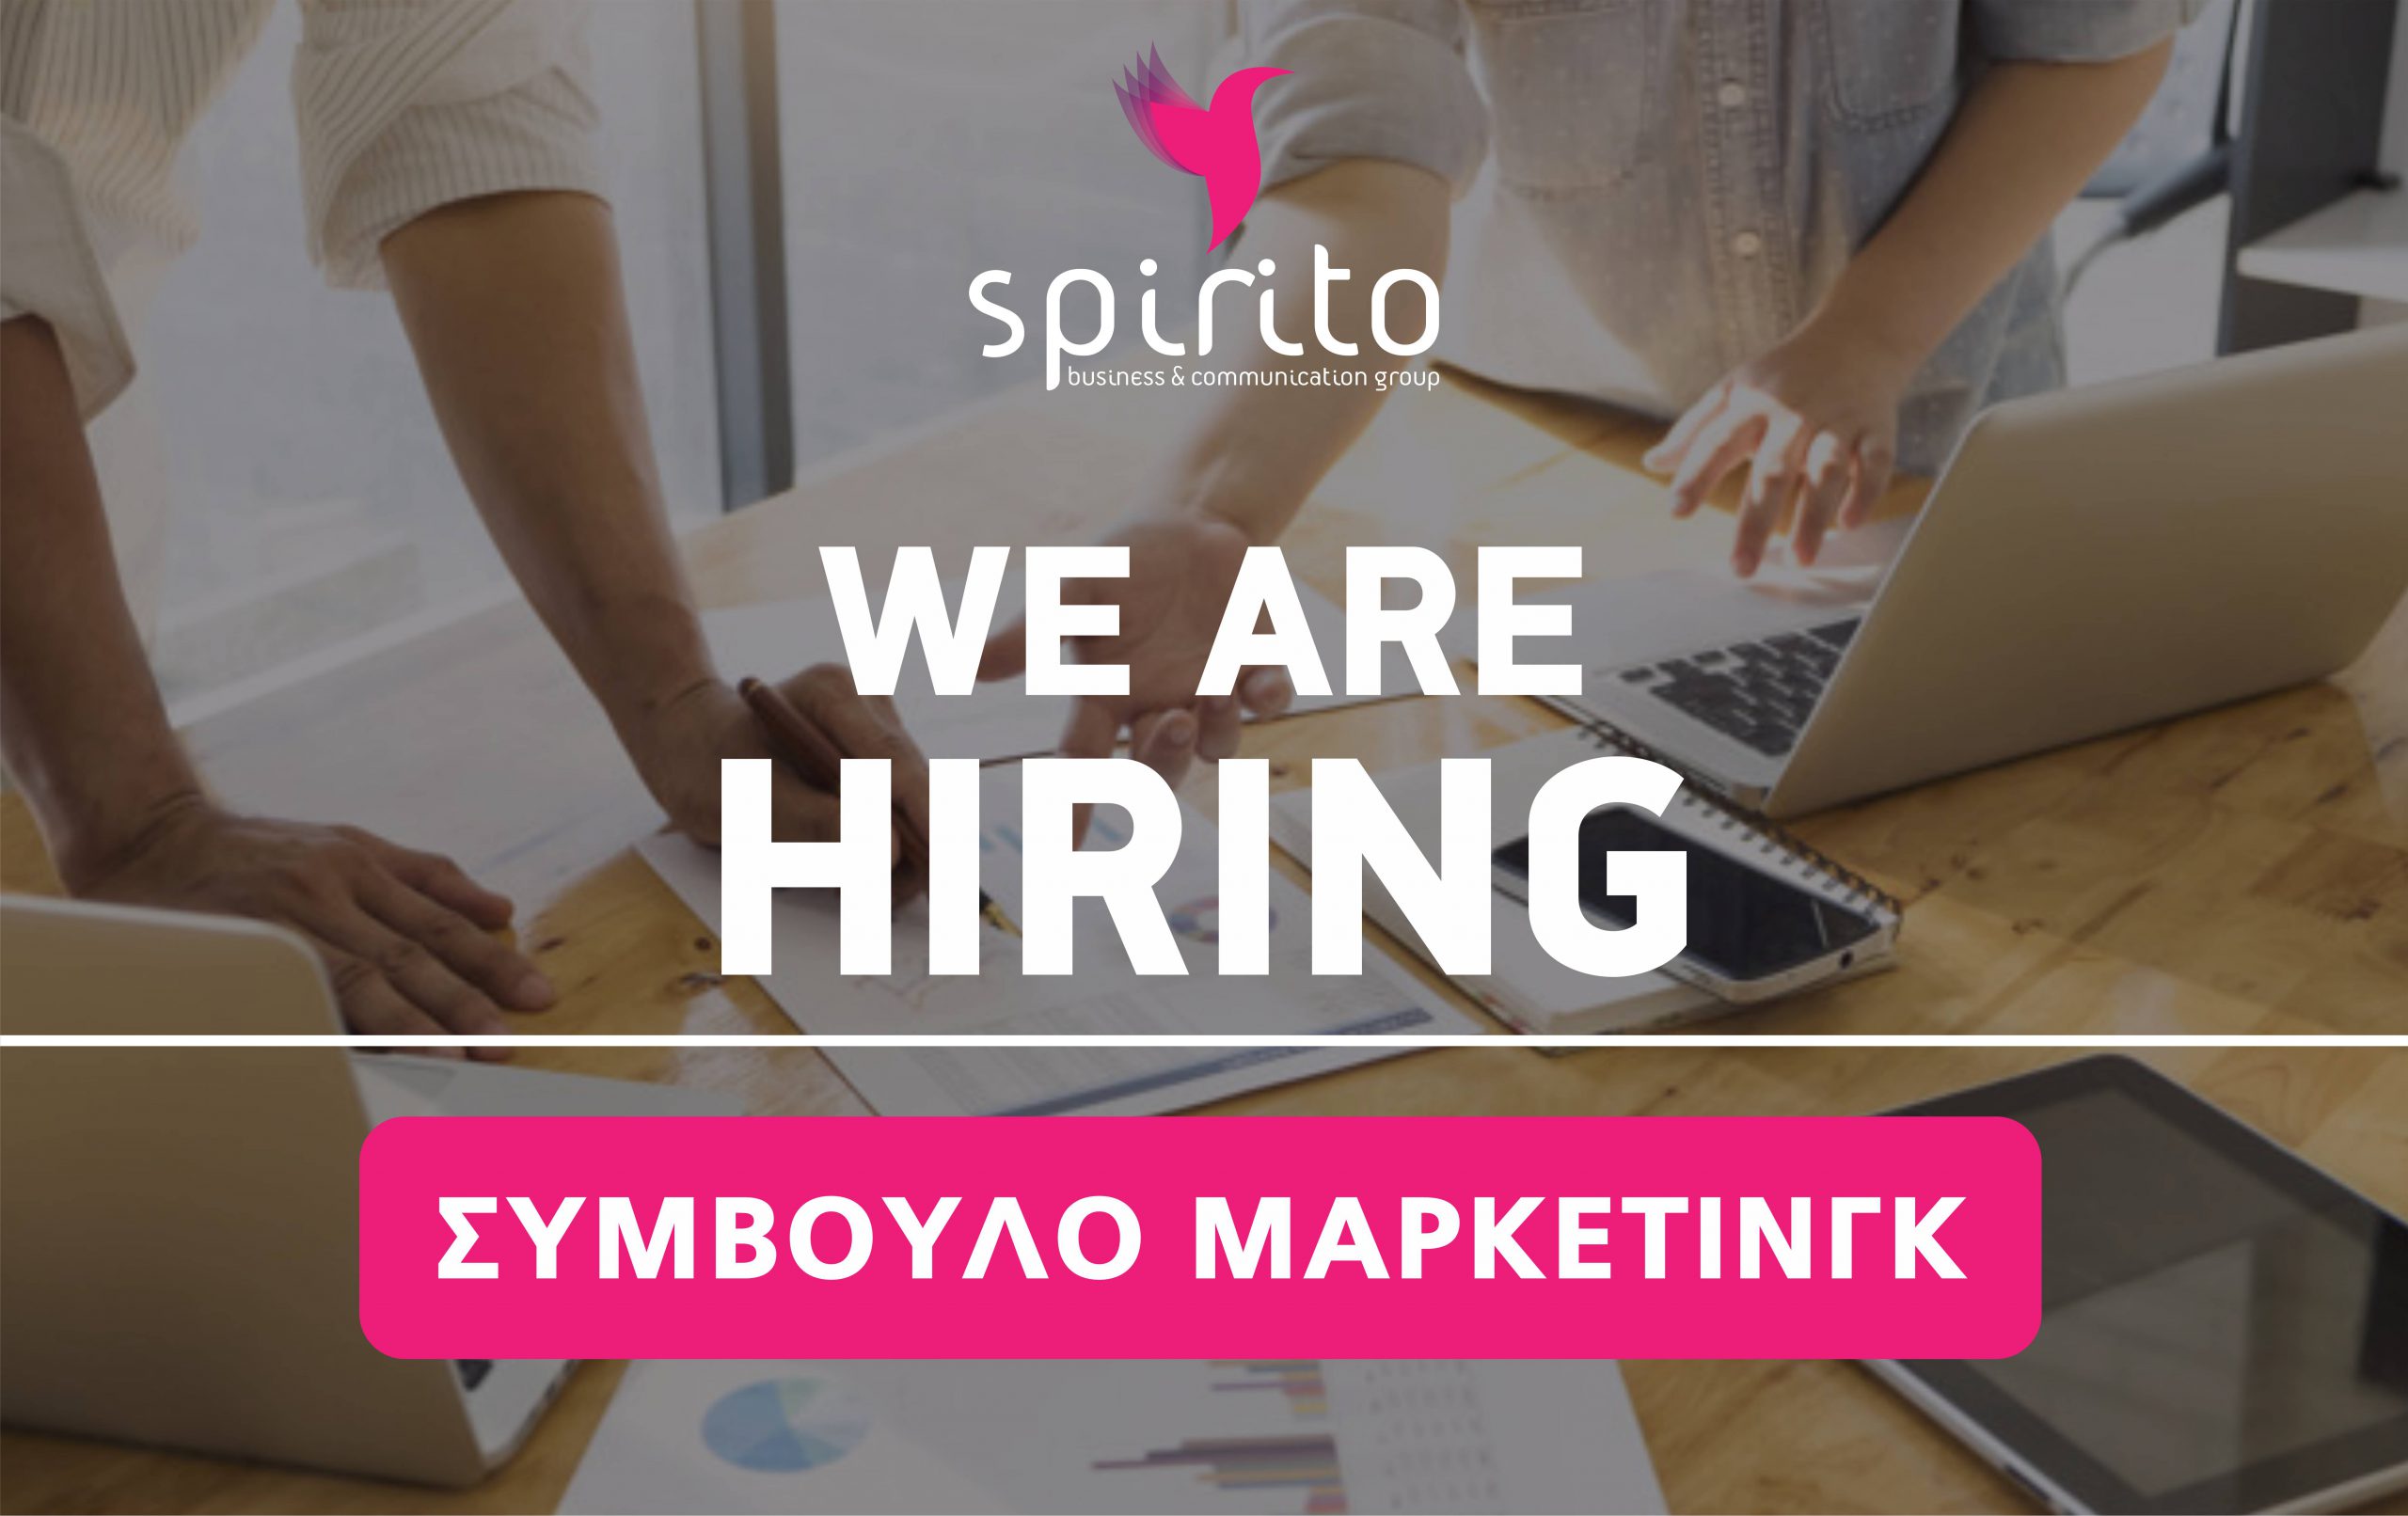 spirito we are hiring symboylos marketingk scaled